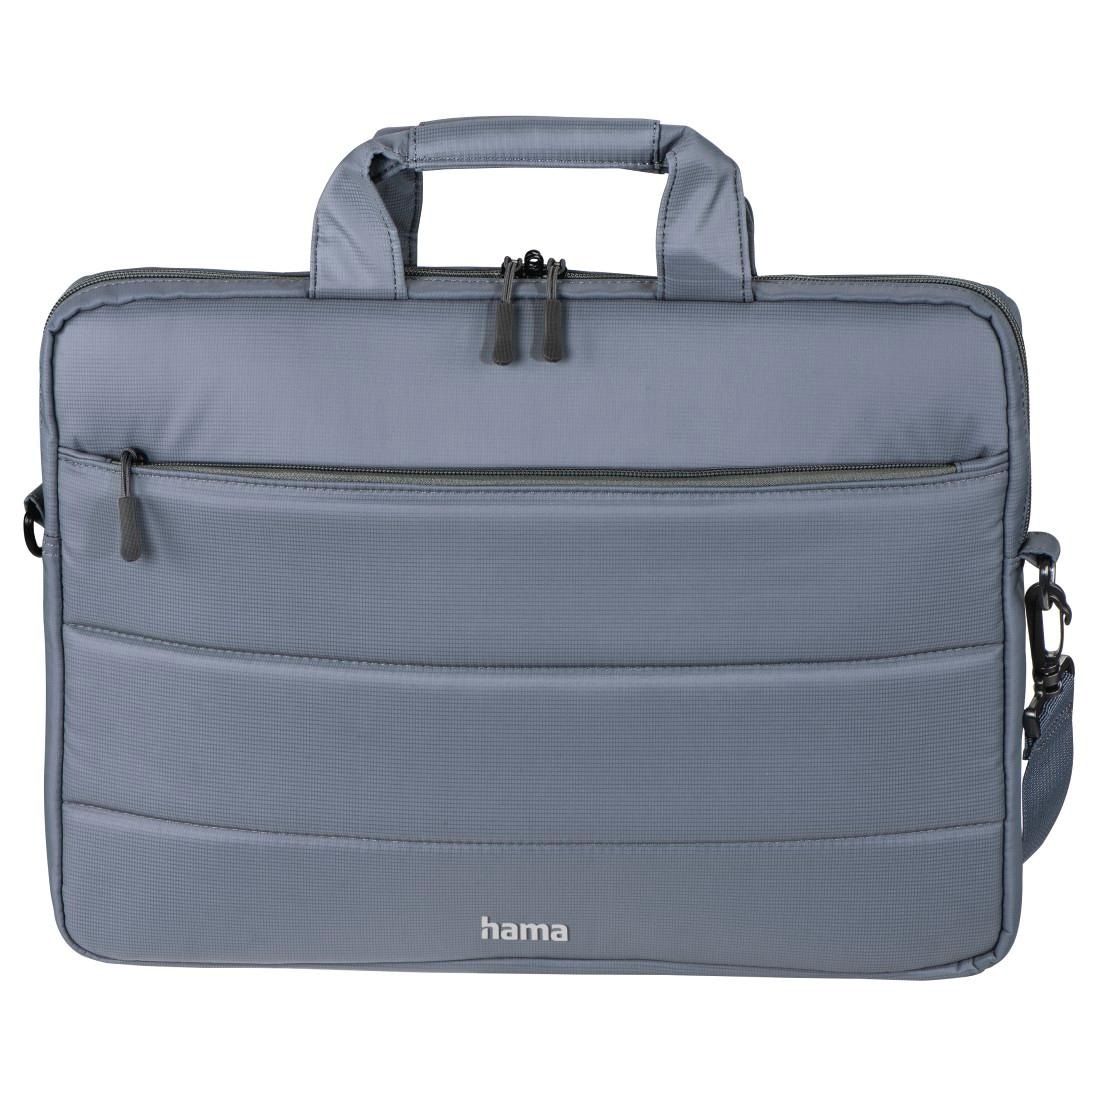 Hama Laptoptasche »Notebook Tasche bis 36 cm (14,1 Zoll), Farbe Grau«, Mit Tablet- und Dokumentenfach, Organizerstruktur und Trolleyband